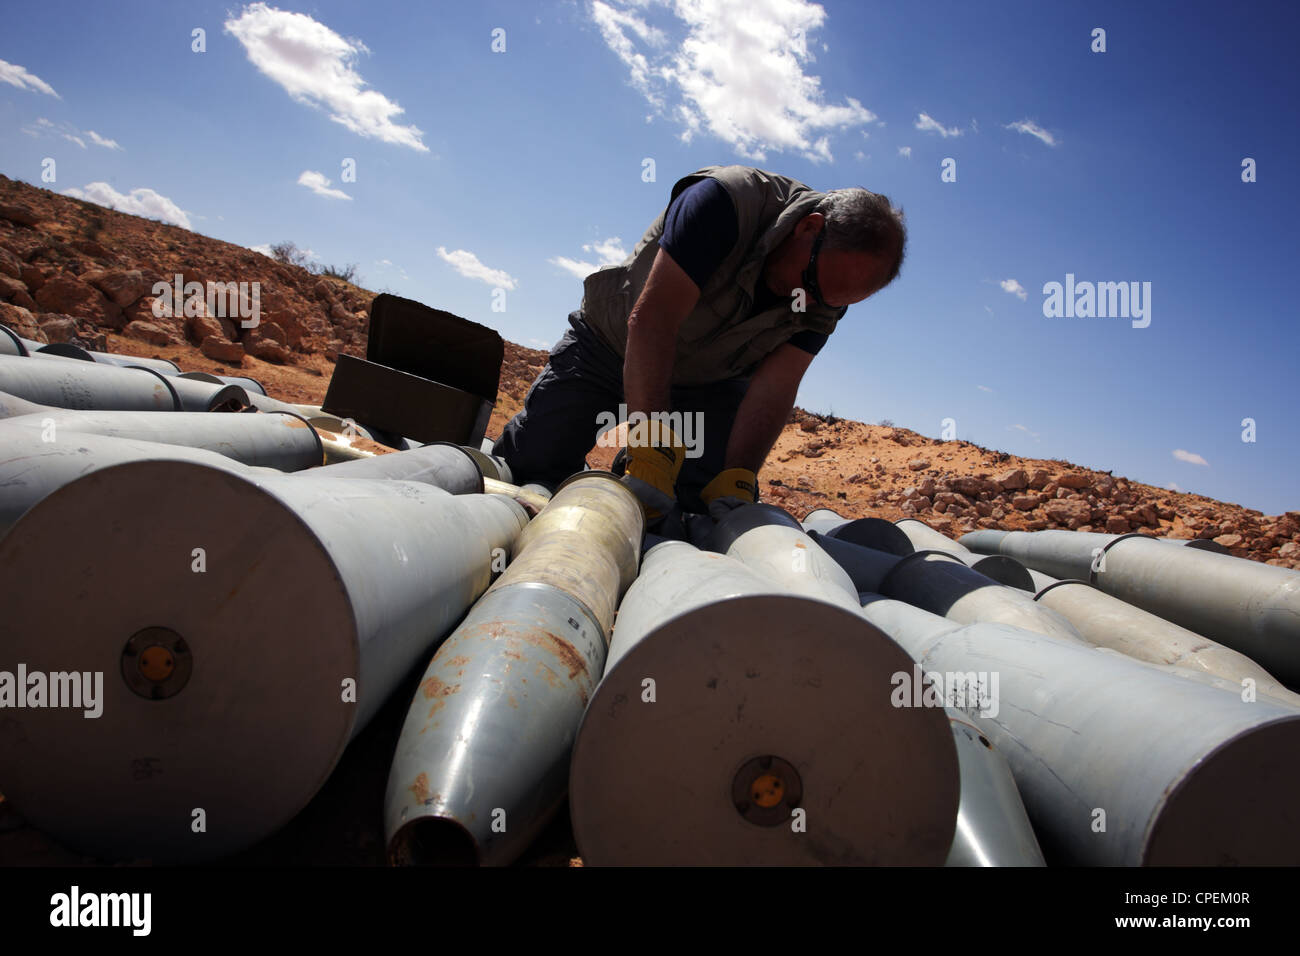 Mine International et des groupes de neutralisation des bombes préparer la démolition d'un stock important de munitions non explosés trouvés à Syrte, en Libye Banque D'Images